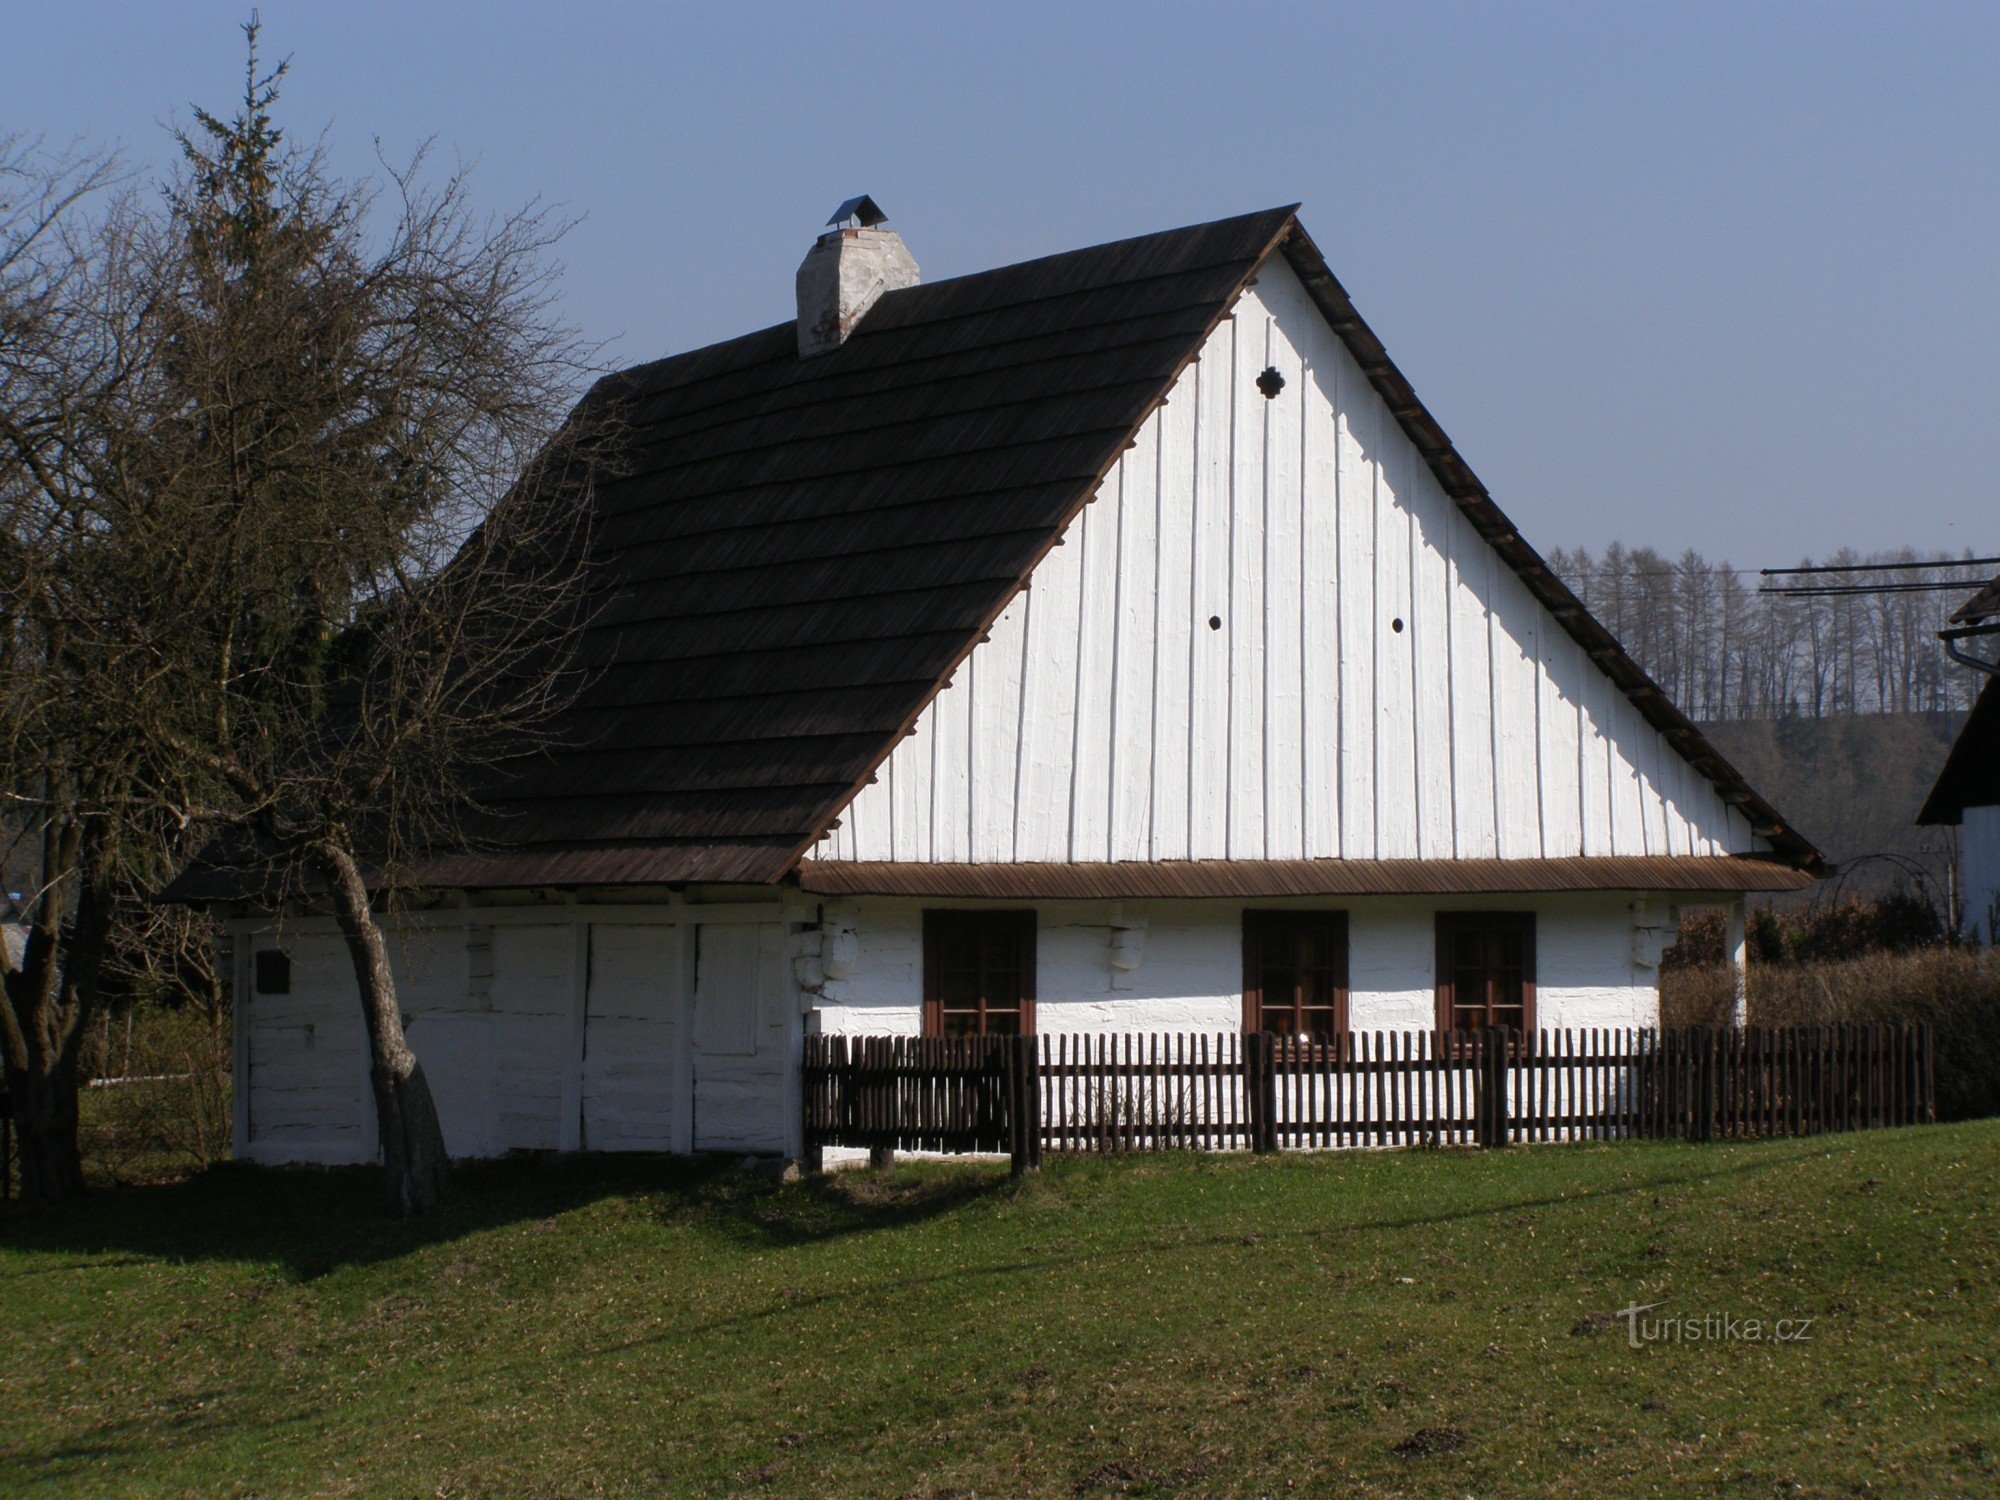 Žamberk (Helvíkovice) - födelseplatsen för Prokop Diviš